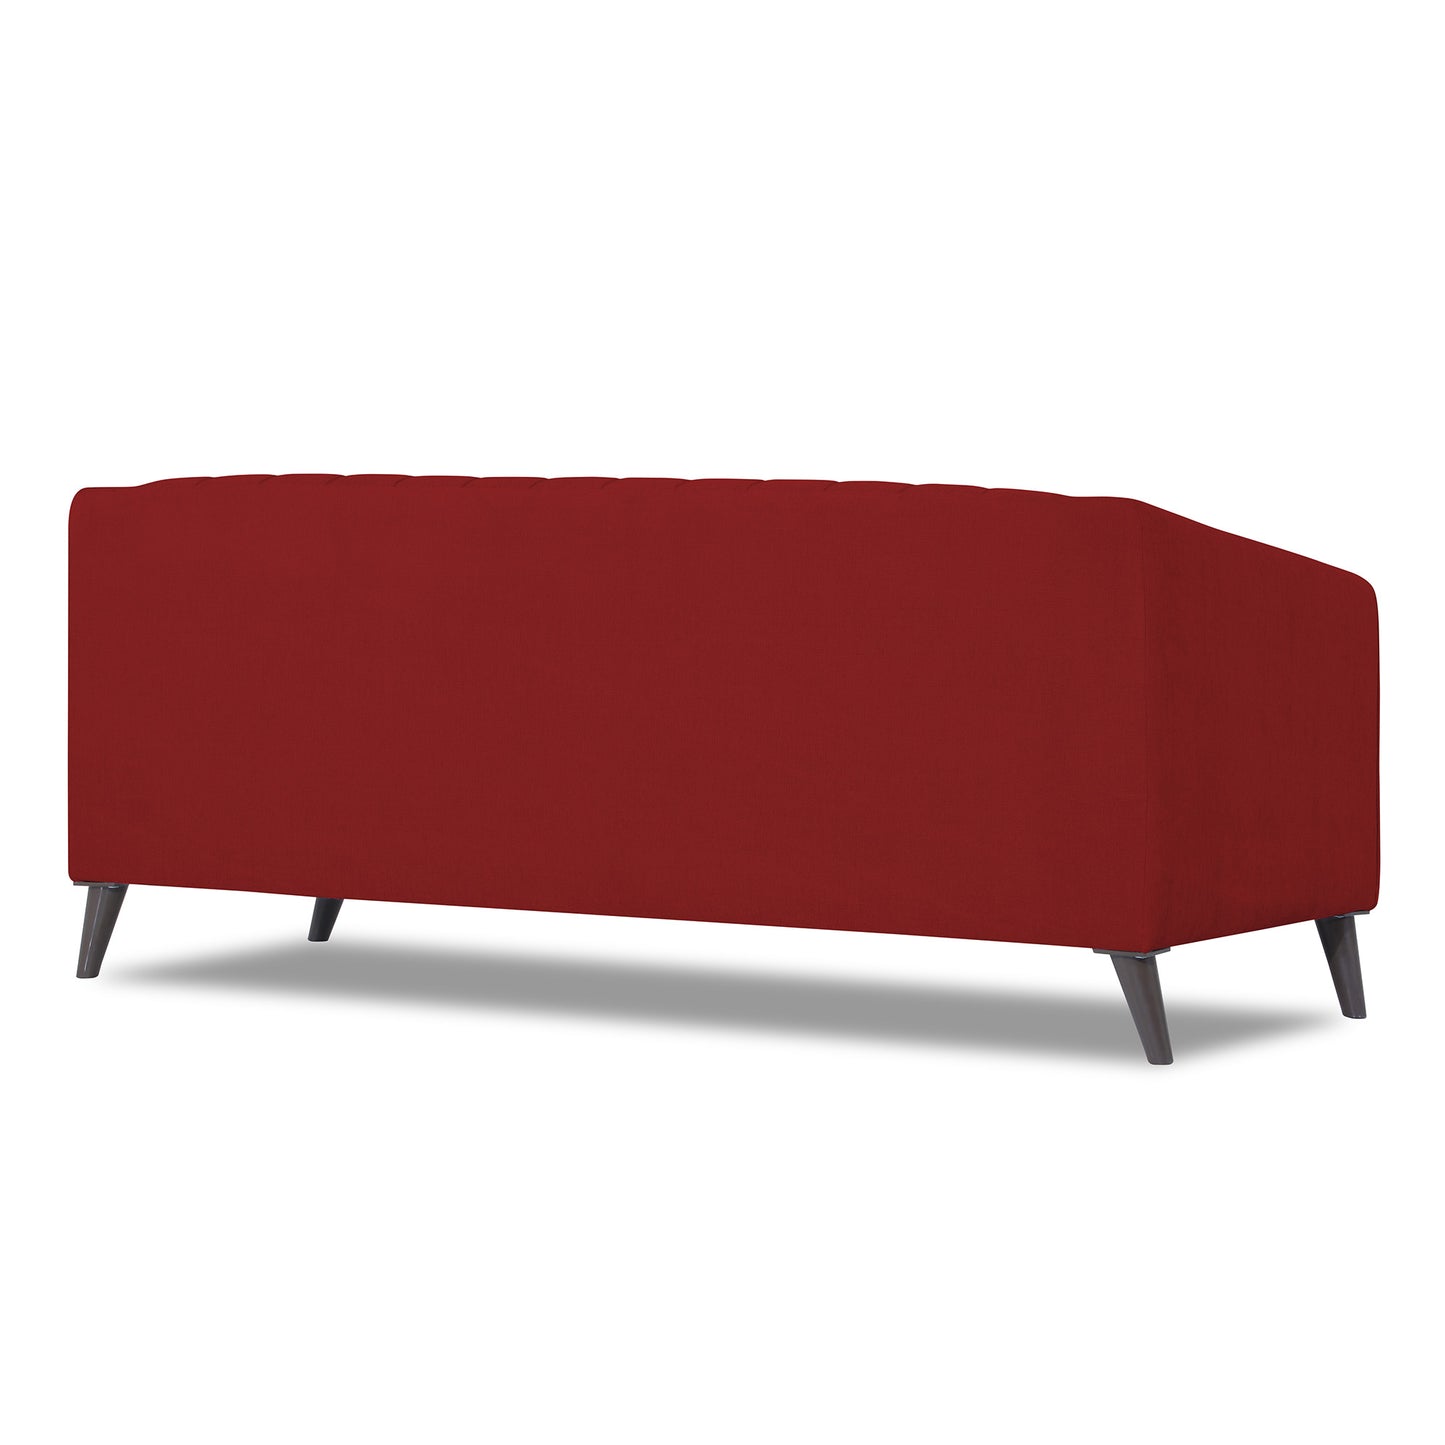 Adorn India Premium Laurel 3 Seater Sofa (Red)